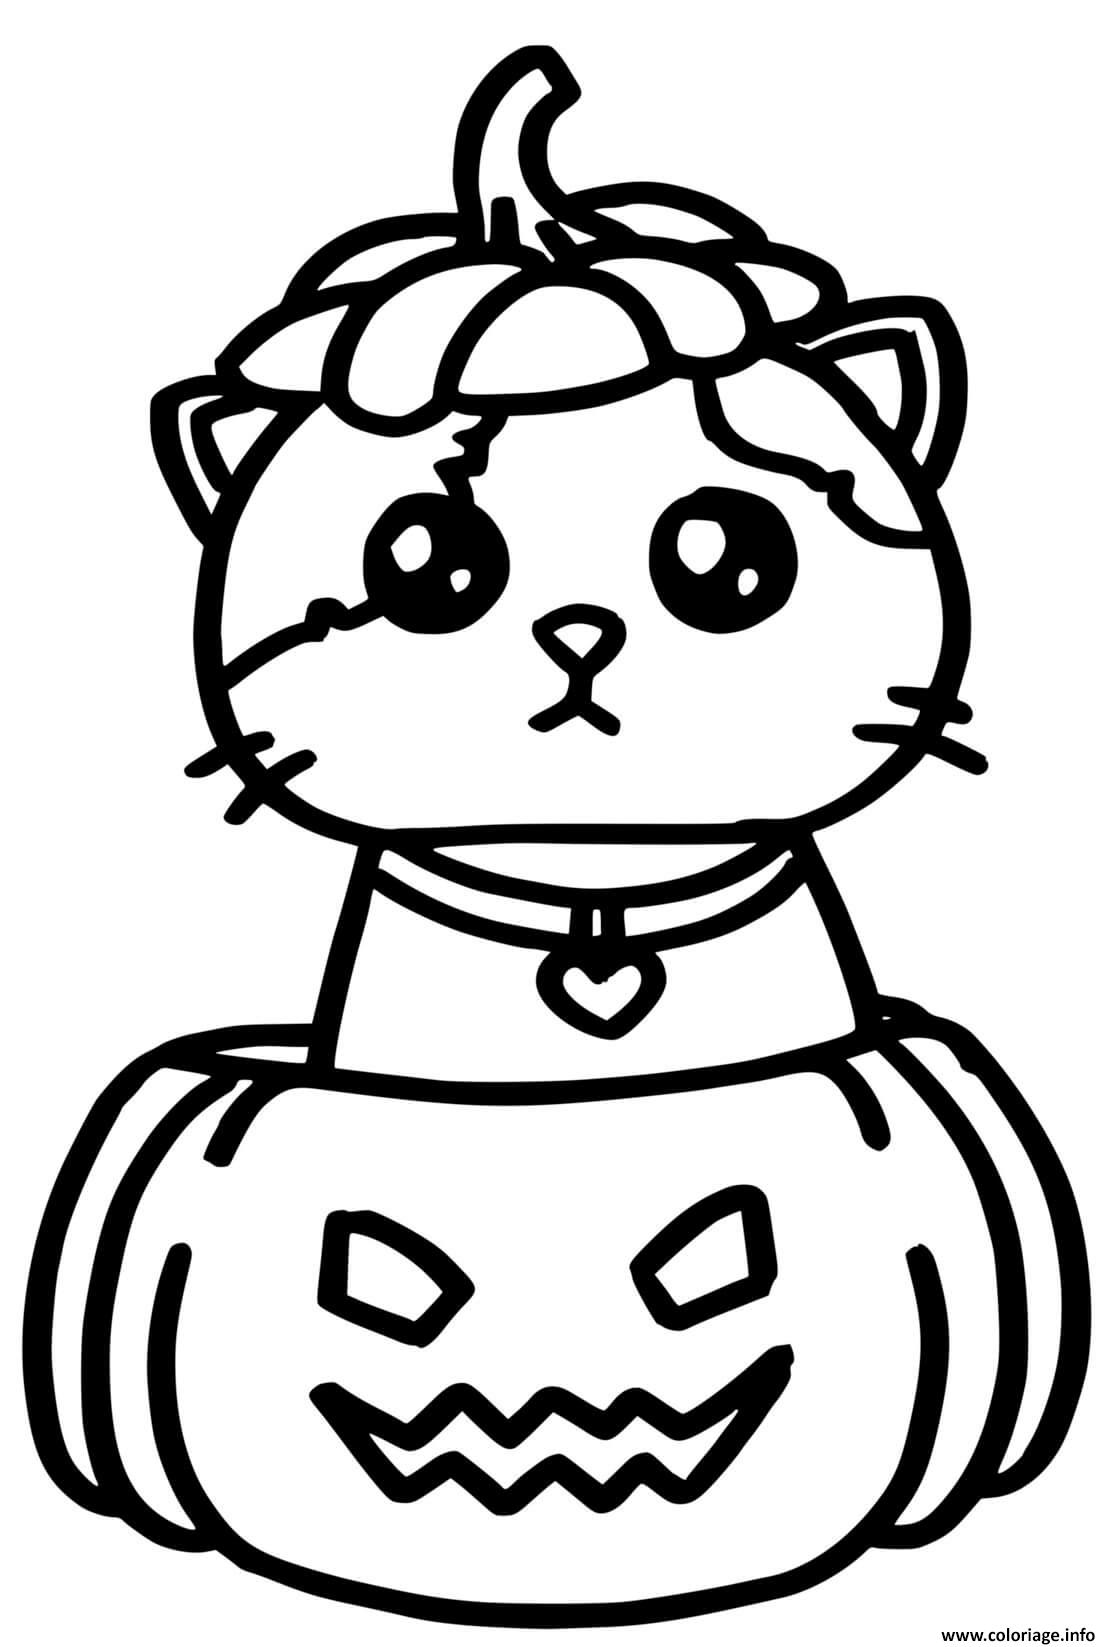 Dessin chat kawaii dans une cirtrouille halloween facile Coloriage Gratuit à Imprimer